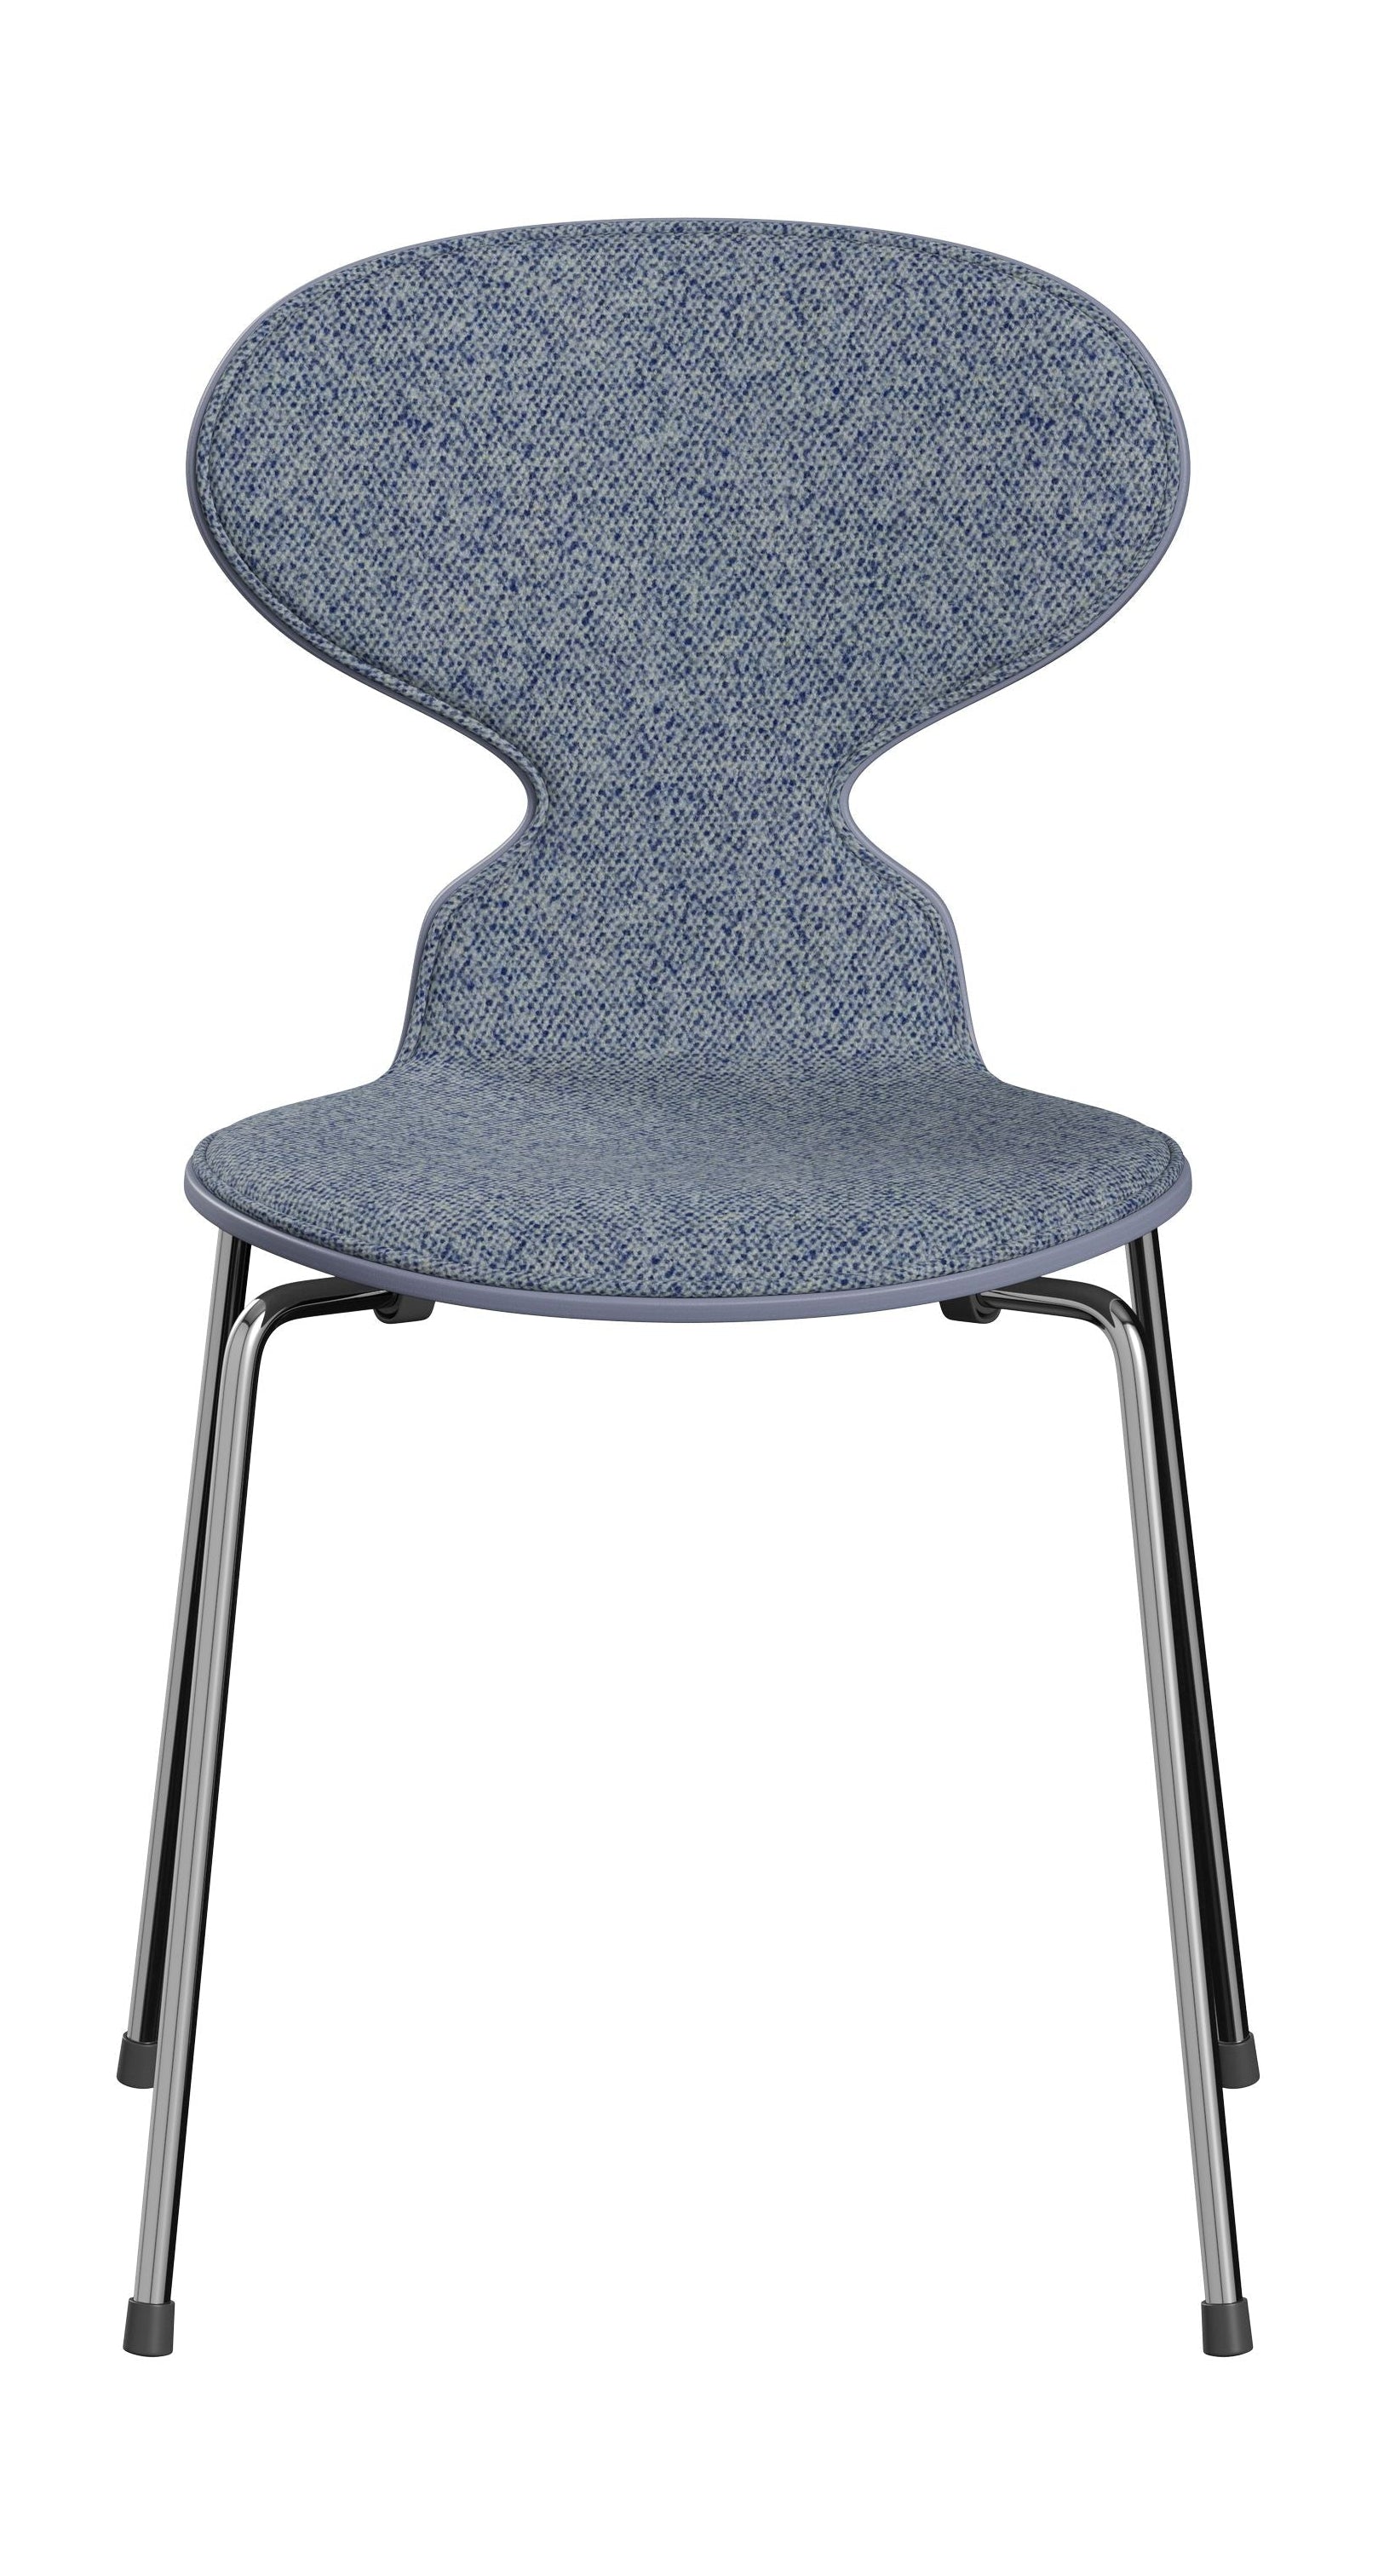 Fritz Hansen 3101 Antstoel voorste bekleding, schaal: gekleurd fineer lavendel blauw, bekleding: vanir textiellichtblauw, basis: staal/chroom